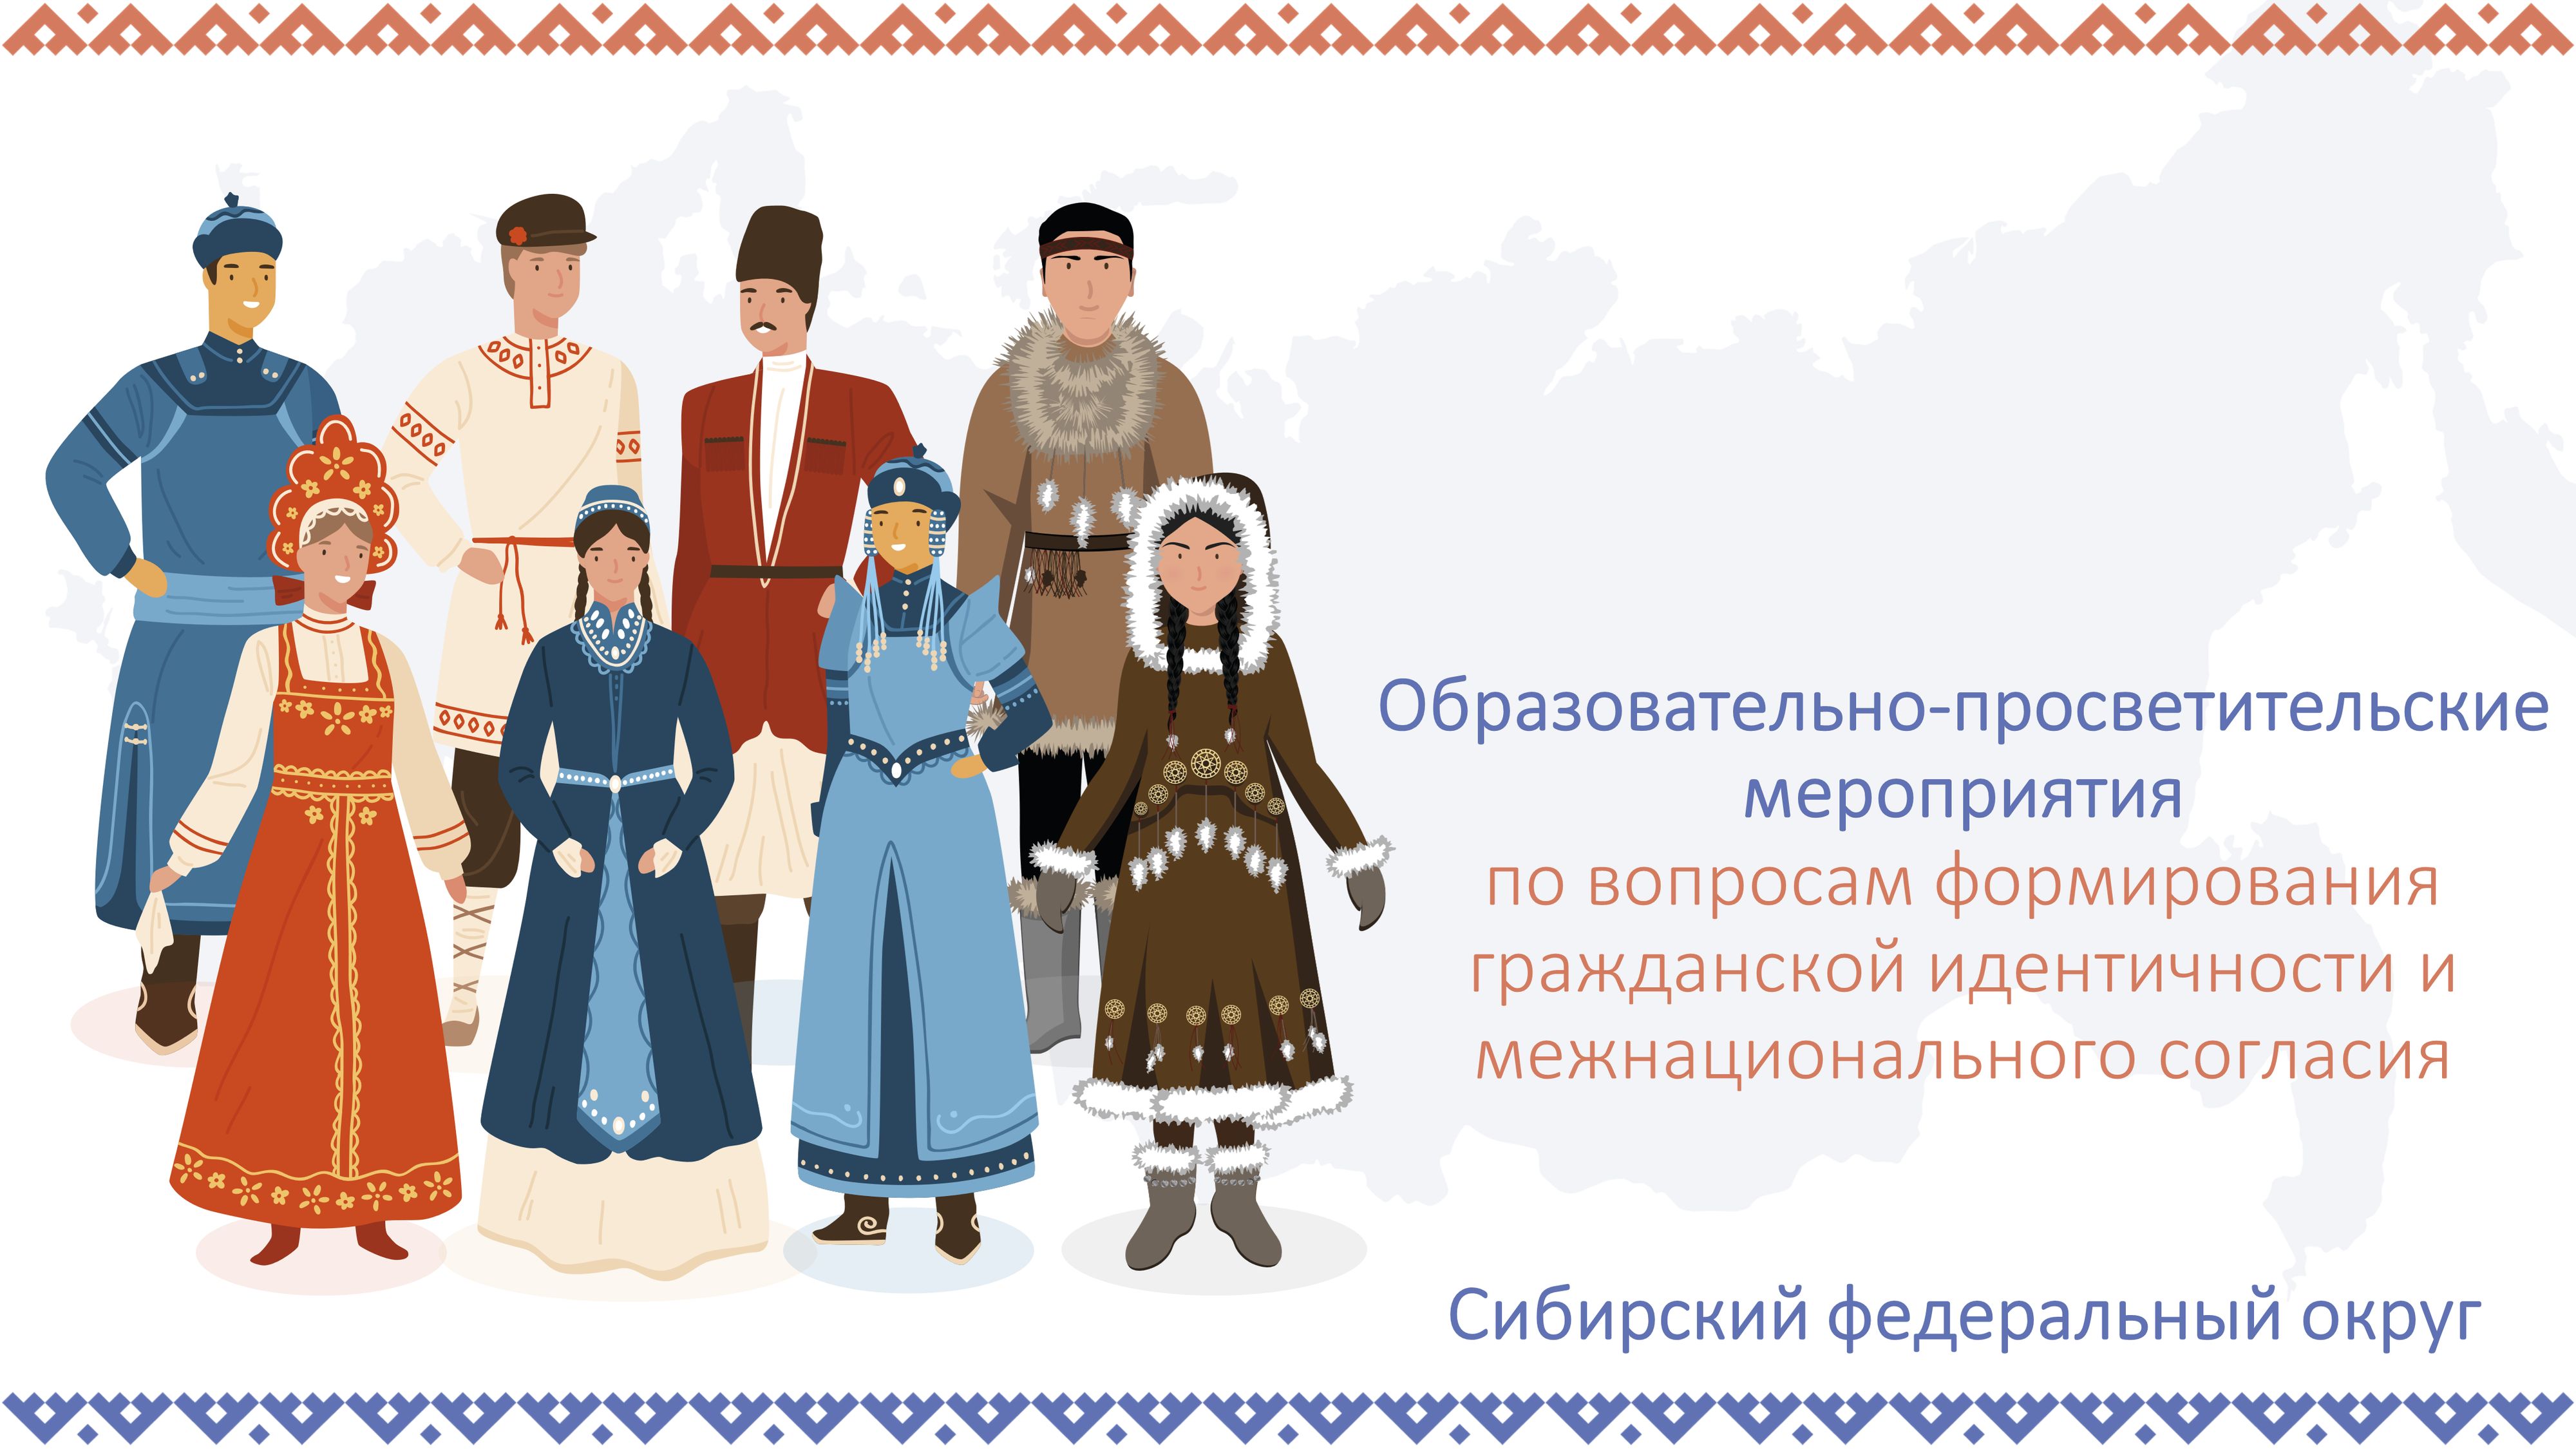 В Сибирском федеральном округе прошла серия образовательно-просветительских мероприятий по вопросам формирования гражданской идентичности и межнационального согласия